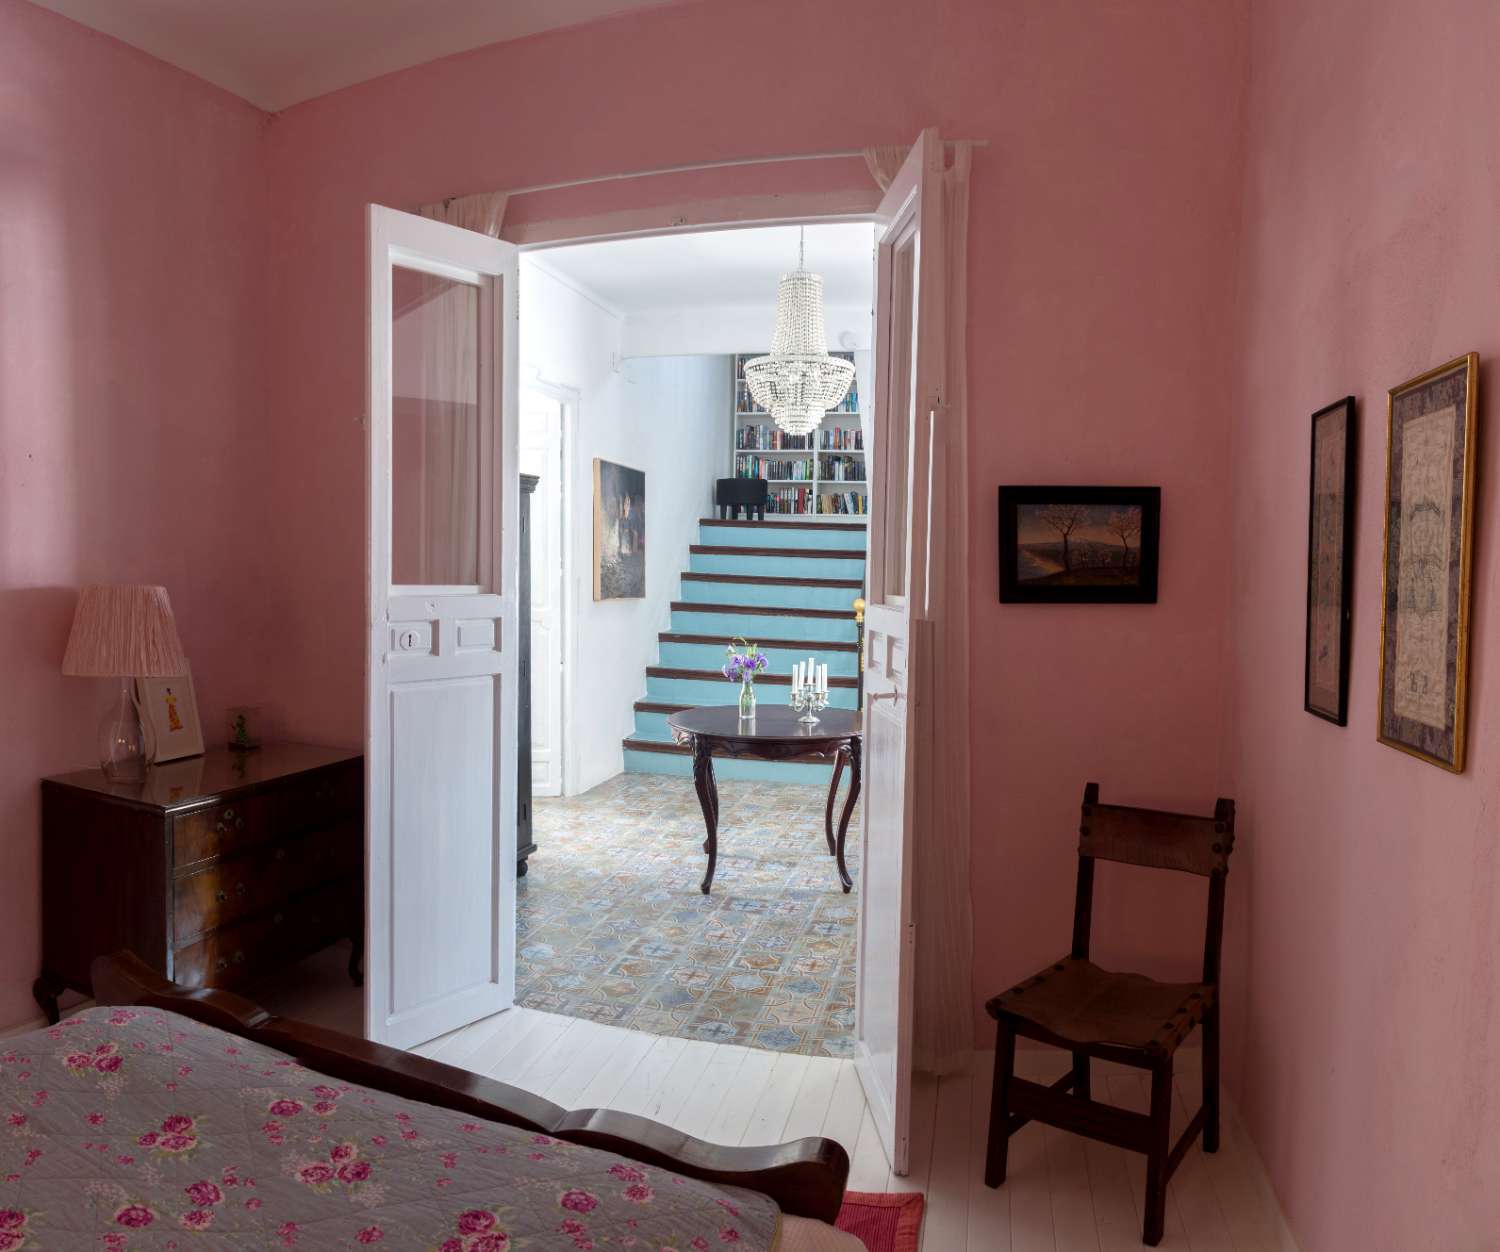 Historiskt Hus i Hjärtat av Vélez-Málaga - Upplev Tradition med Lyxen av Nutiden.